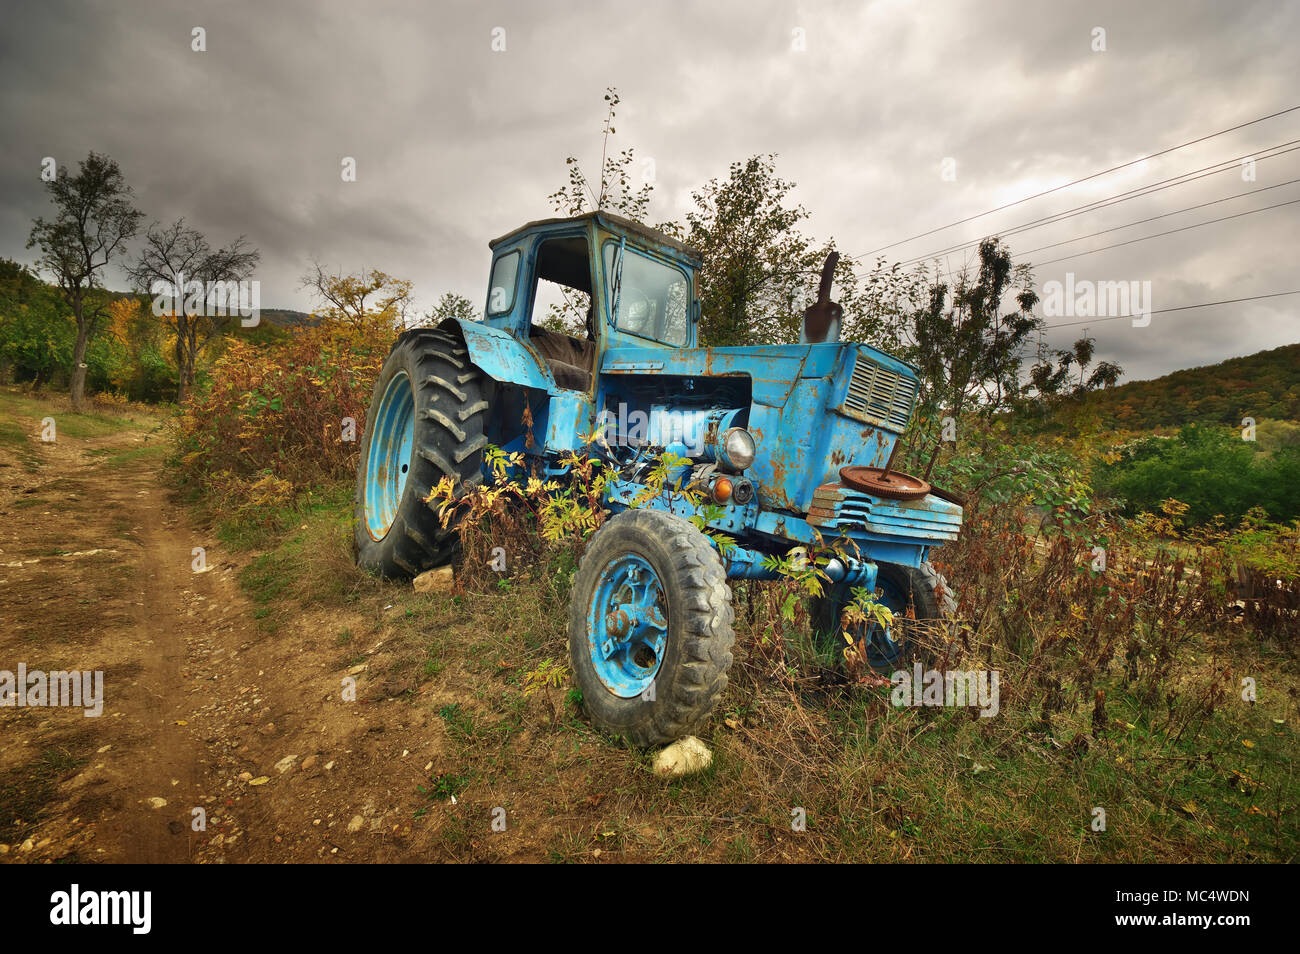 Viejo tractor oxidado abandonados Foto de stock